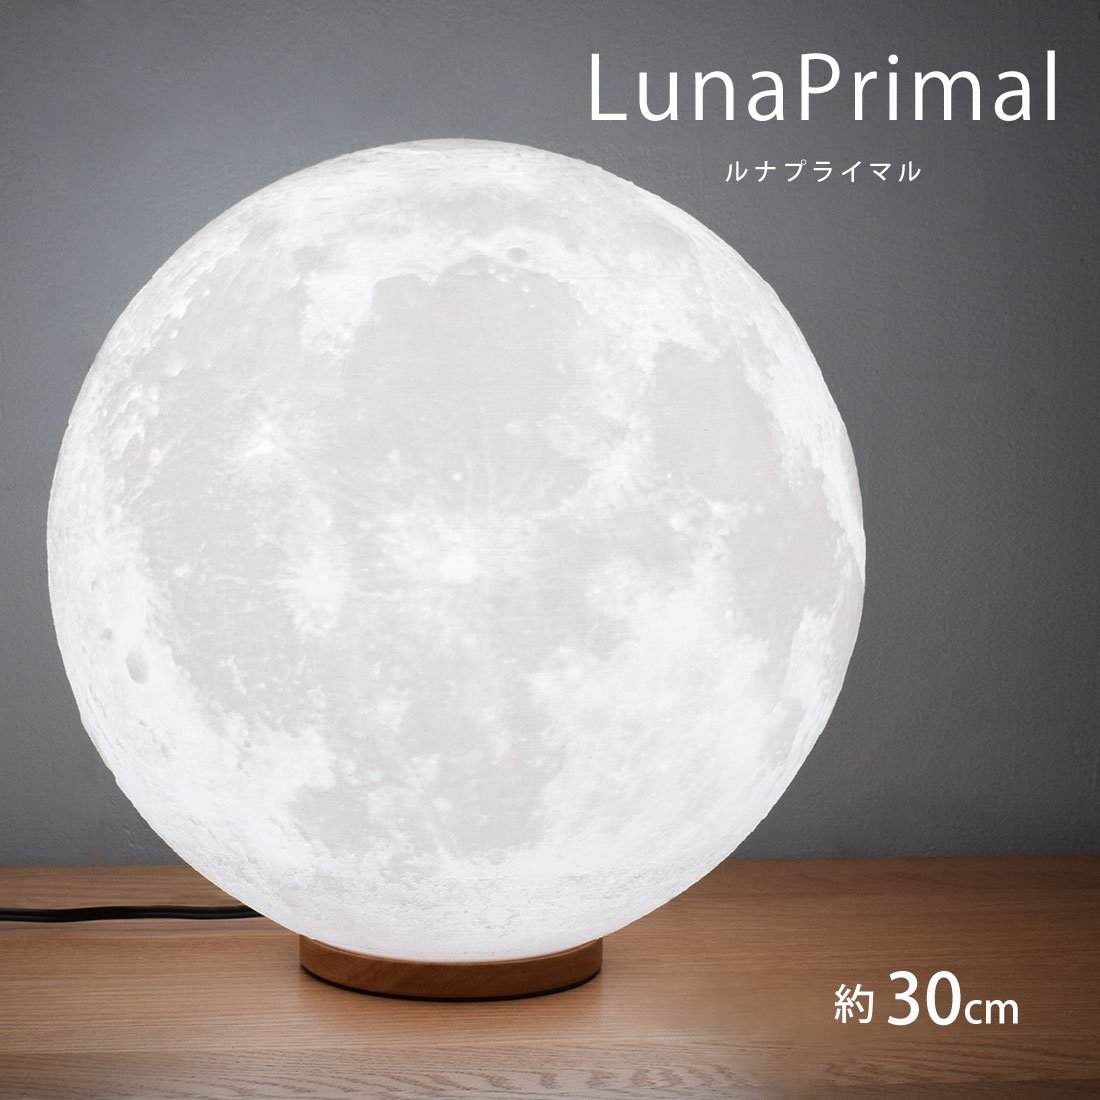 月ライト 30cm LED 間接照明 木製台座 テーブルランプ 照明 インテリア おしゃれ 月のランプ 月 寝室 おしゃれ 照明_画像1